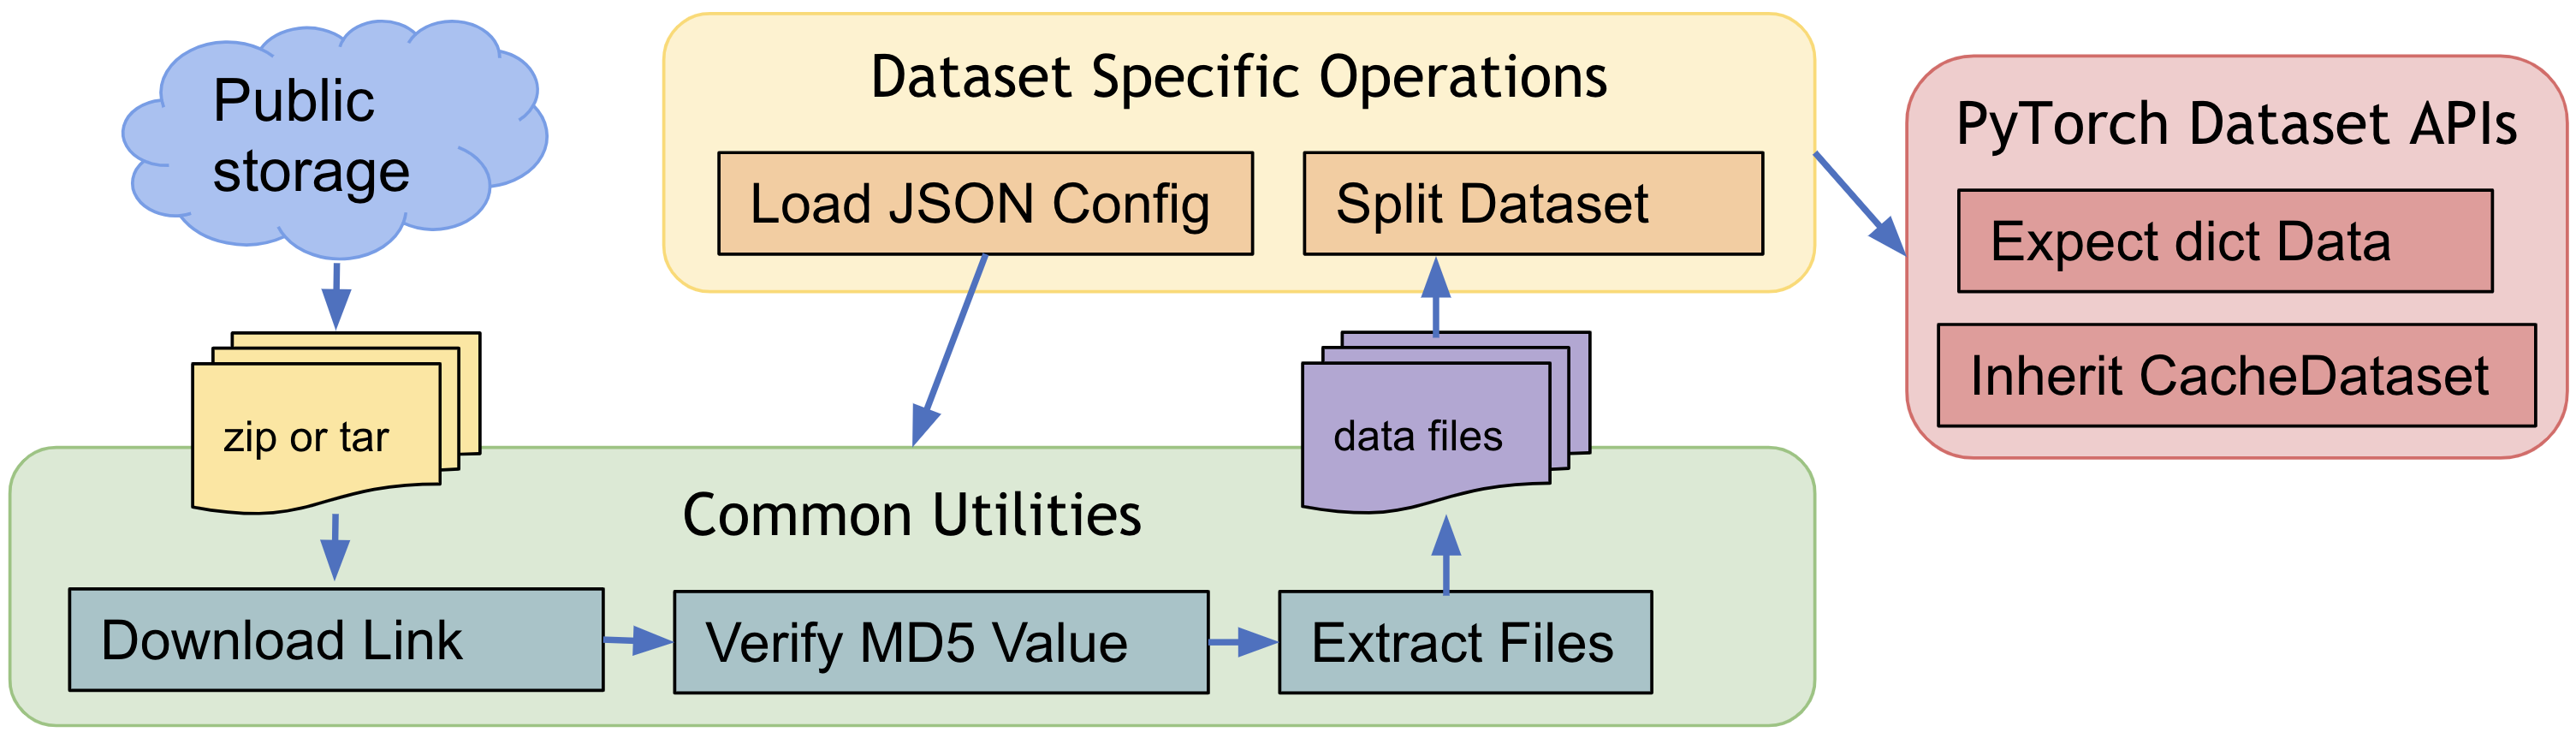 pre-defined dataset